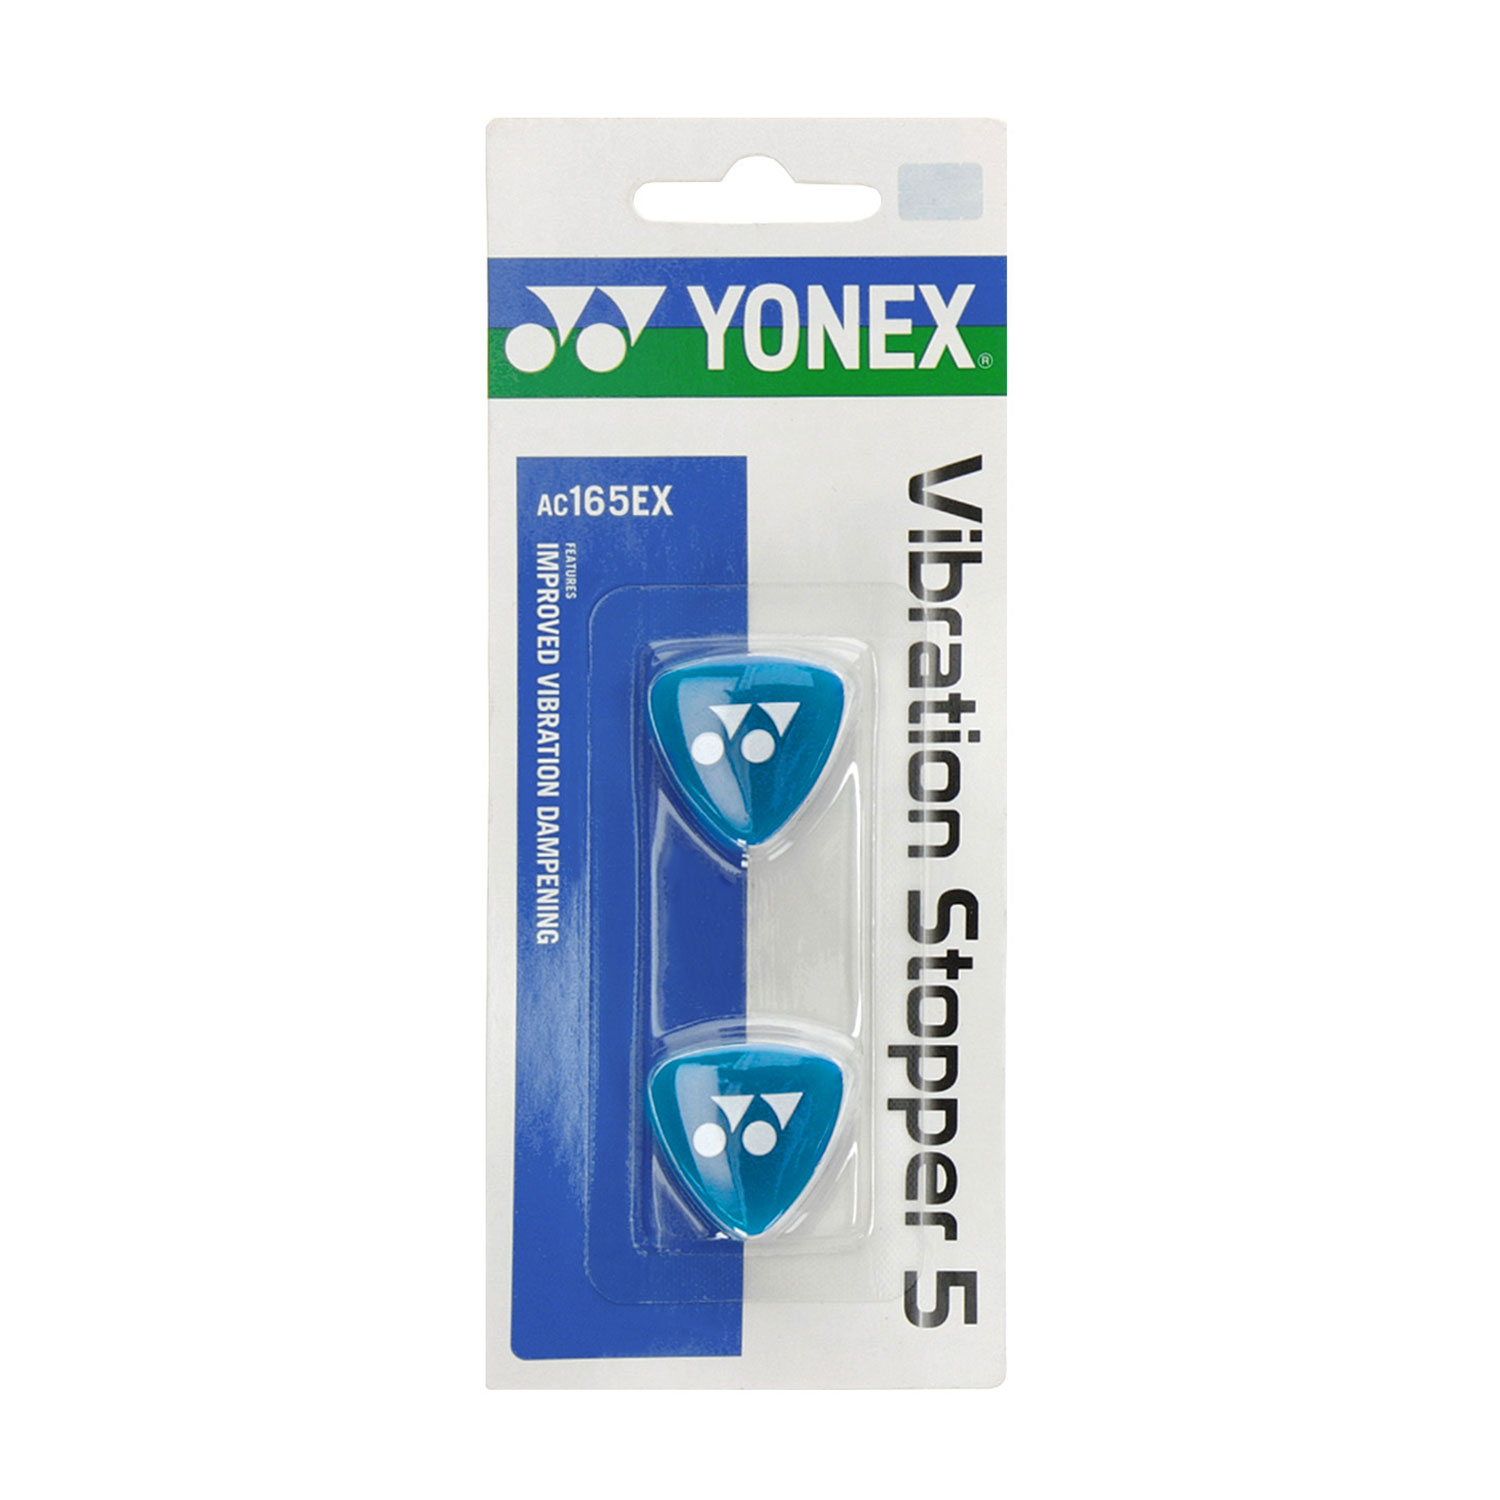 Yonex Vibration Stopper 5 Dampeners - Black/Blue